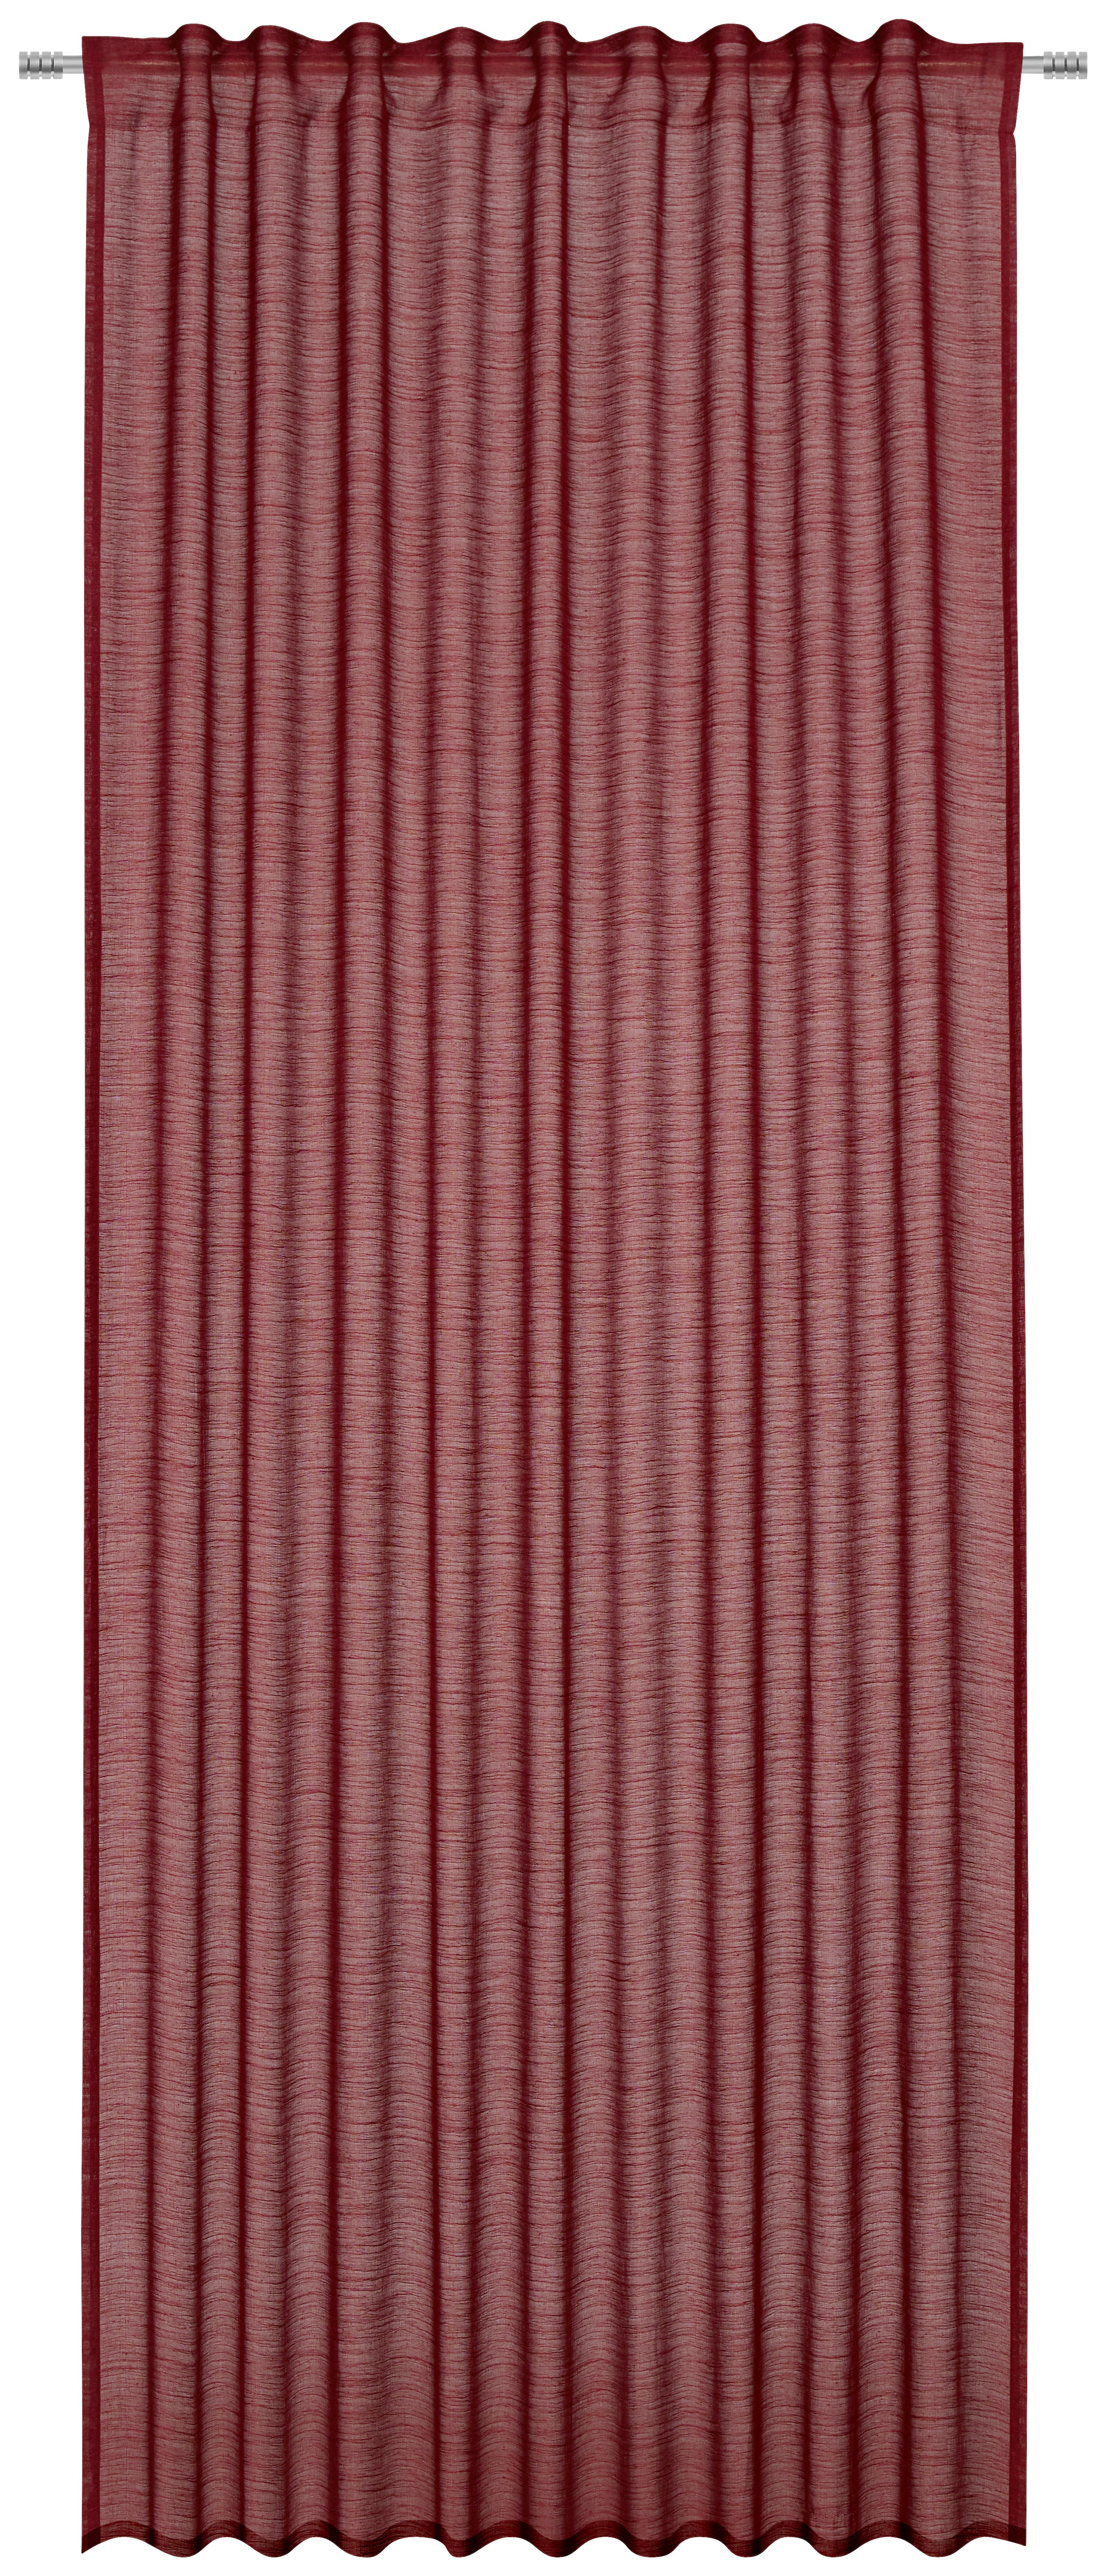 Perdea gata confecţionată semitransparent  - bordo, Basics, textil (140/245cm) - Esposa